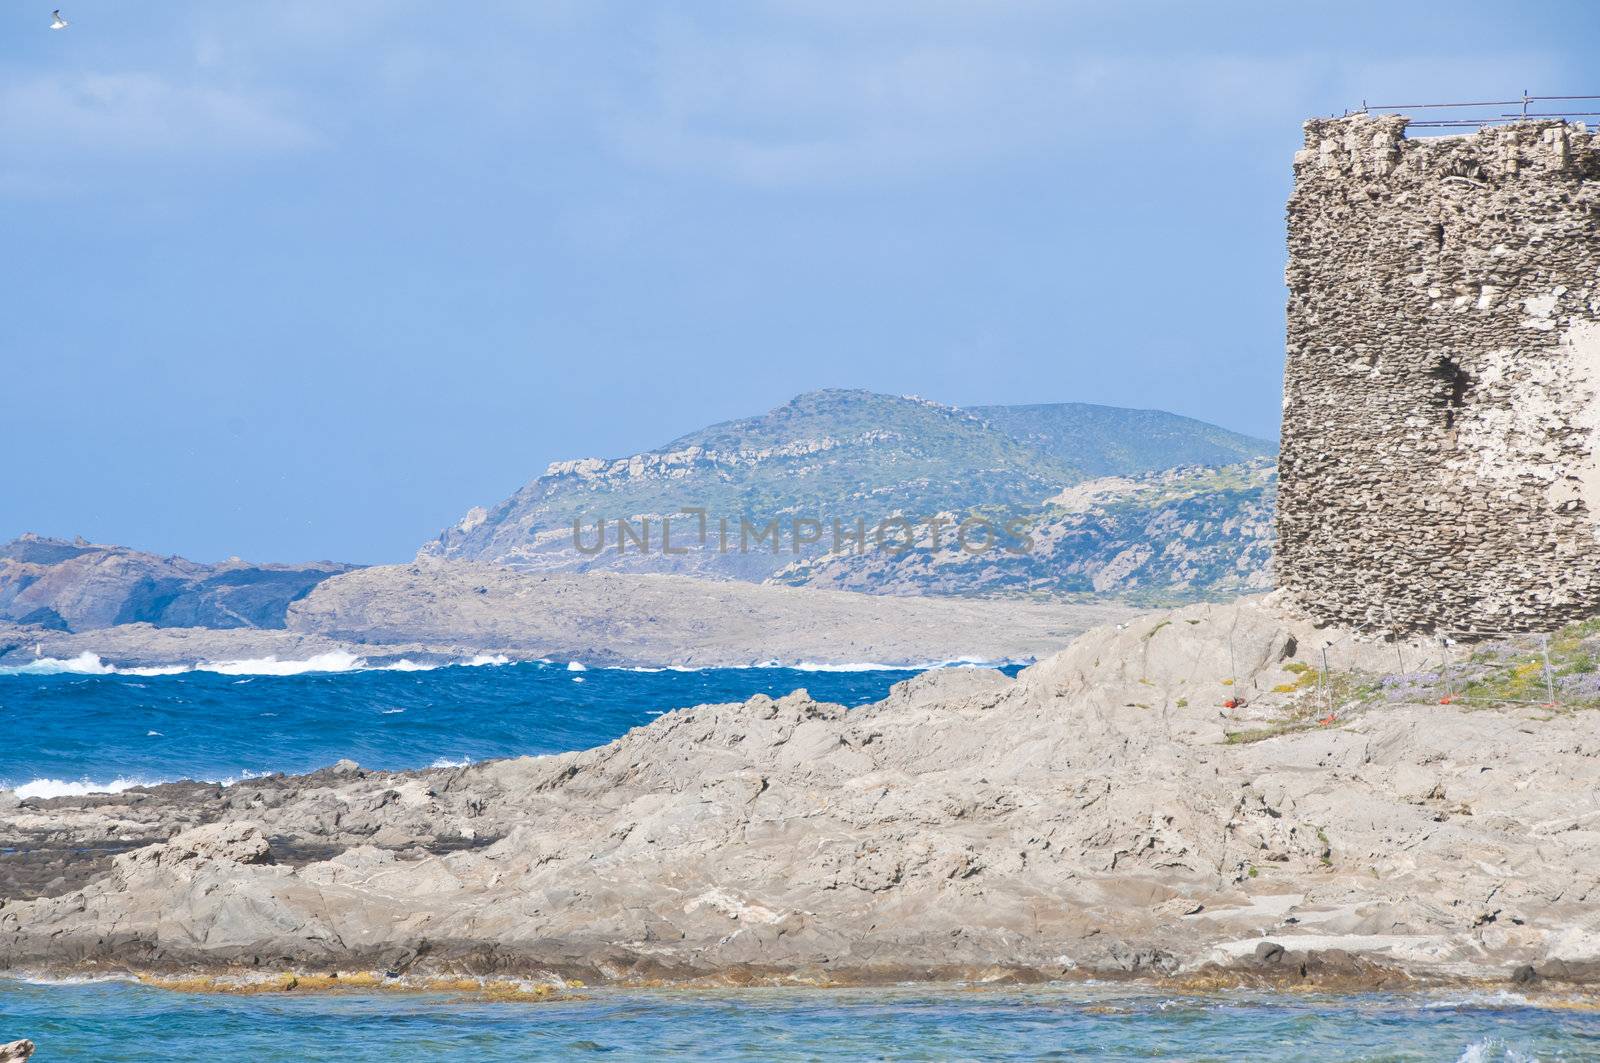 rocks on the beach of Stintino in Sardinia by peus